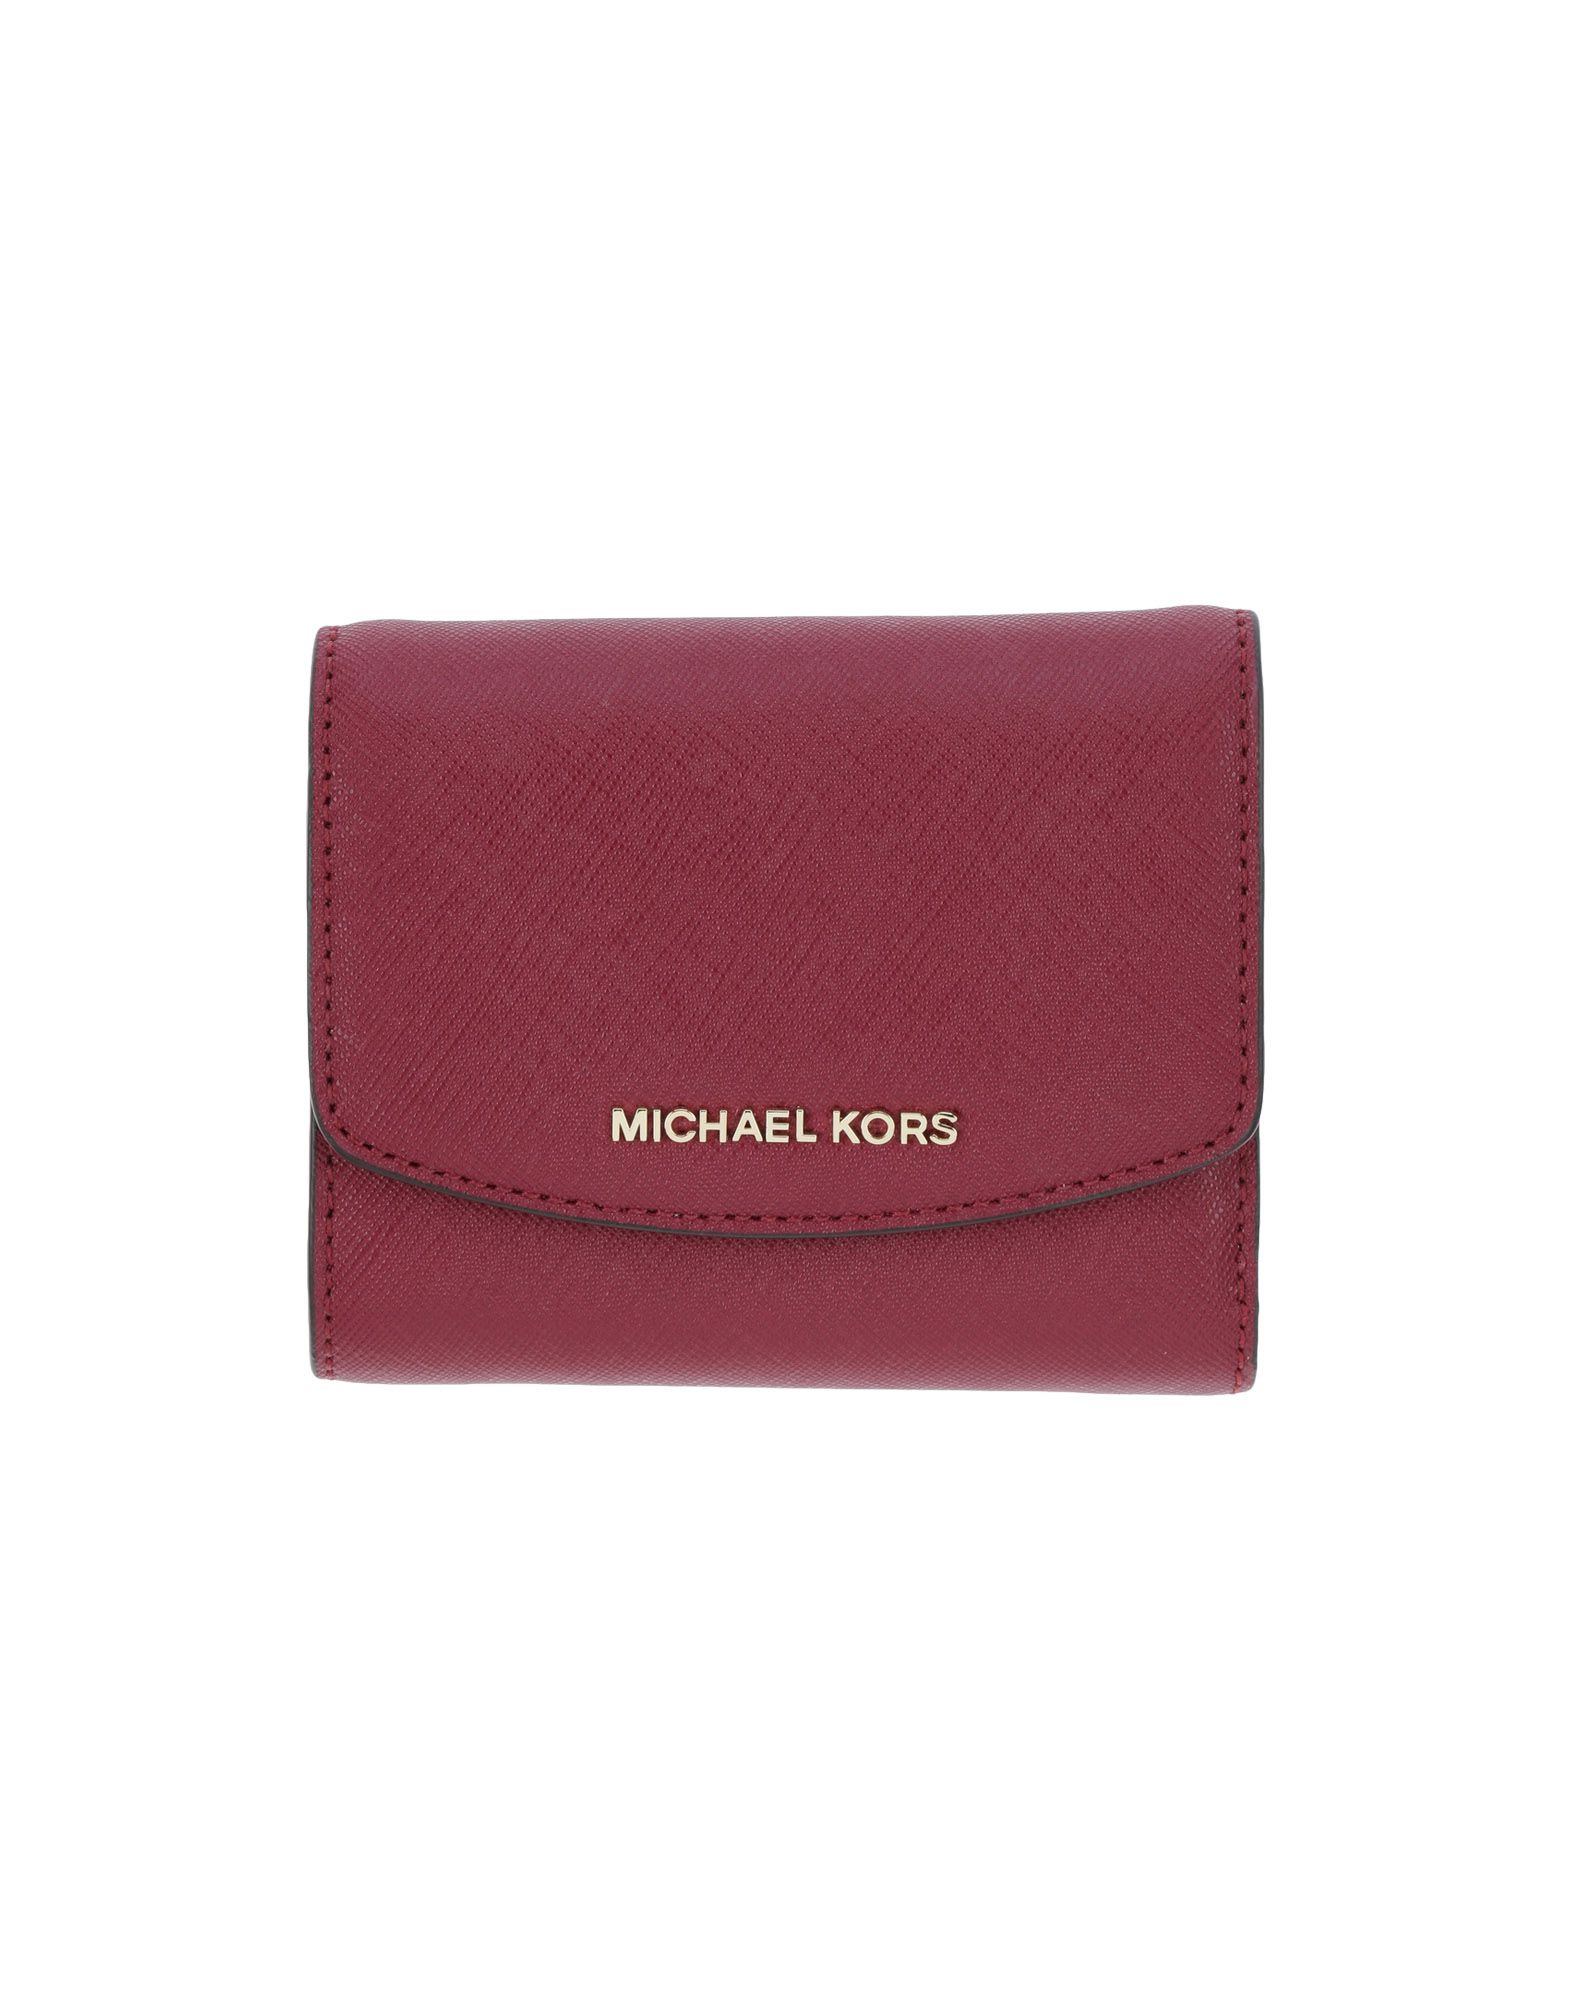 michael kors women's wallets